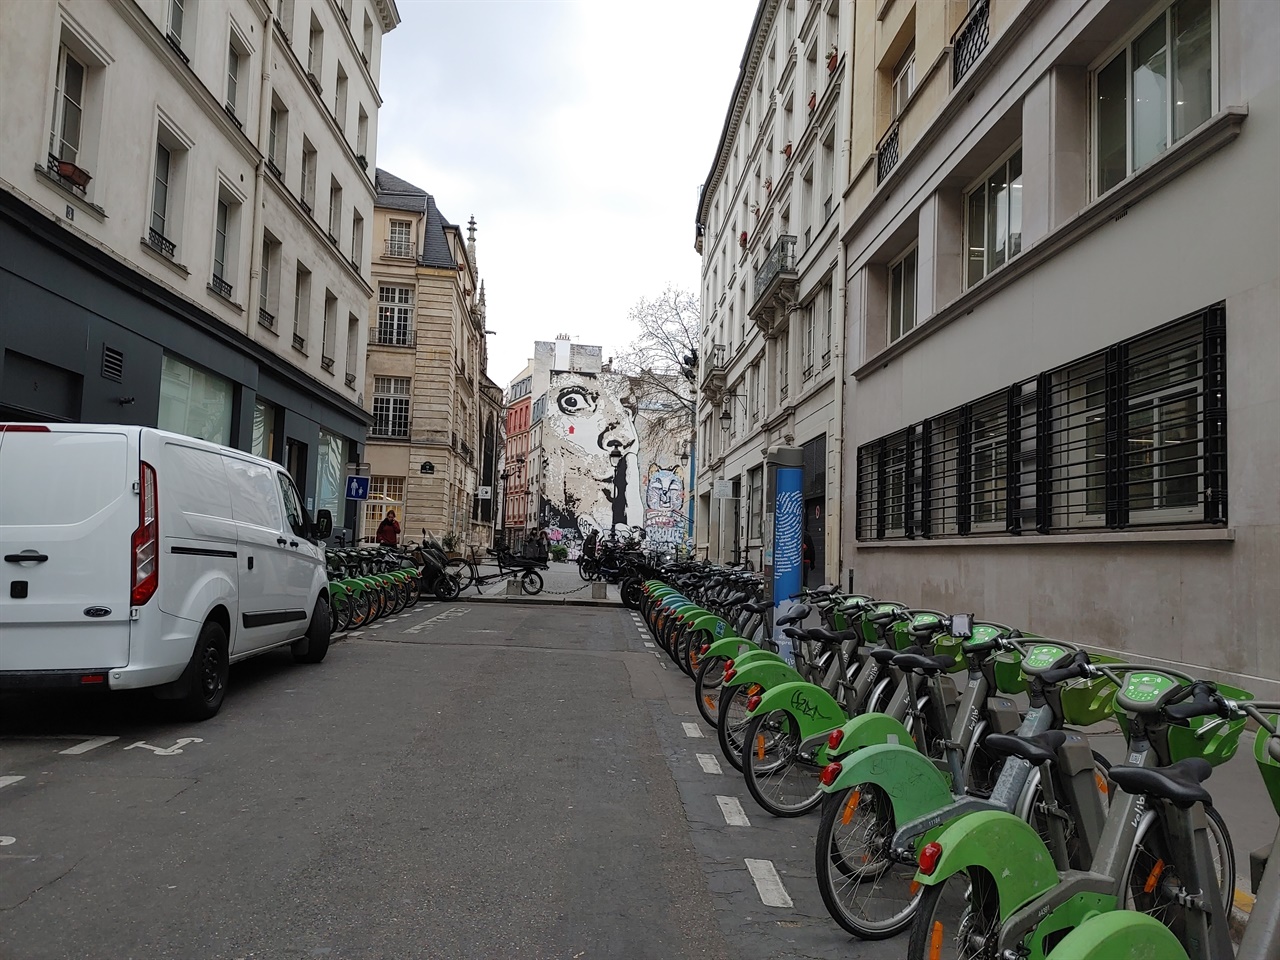 퐁피두 센터로 이어지는 골목에서 파리시 공공자전거 거치대를 발견하였다.